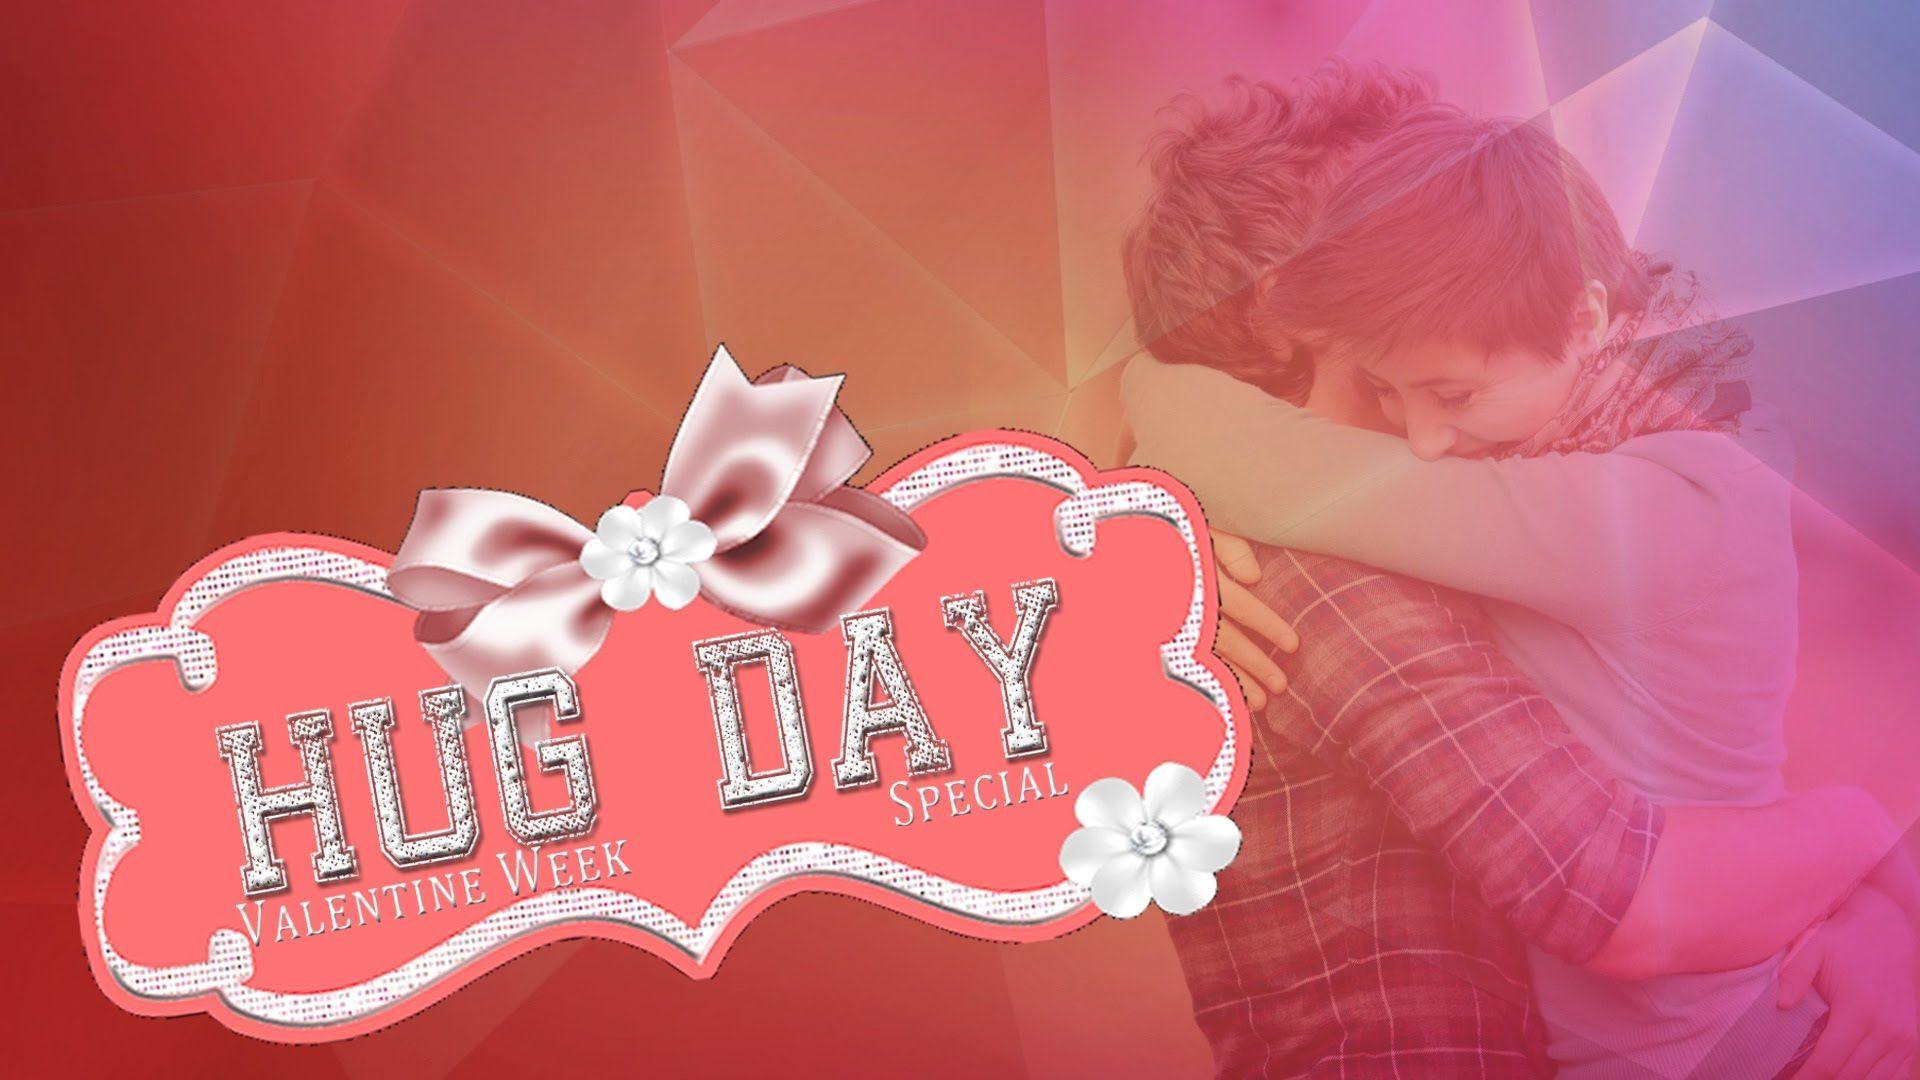 Hug Day Special. Valentine Week Special. Punjabi Romantic Songs